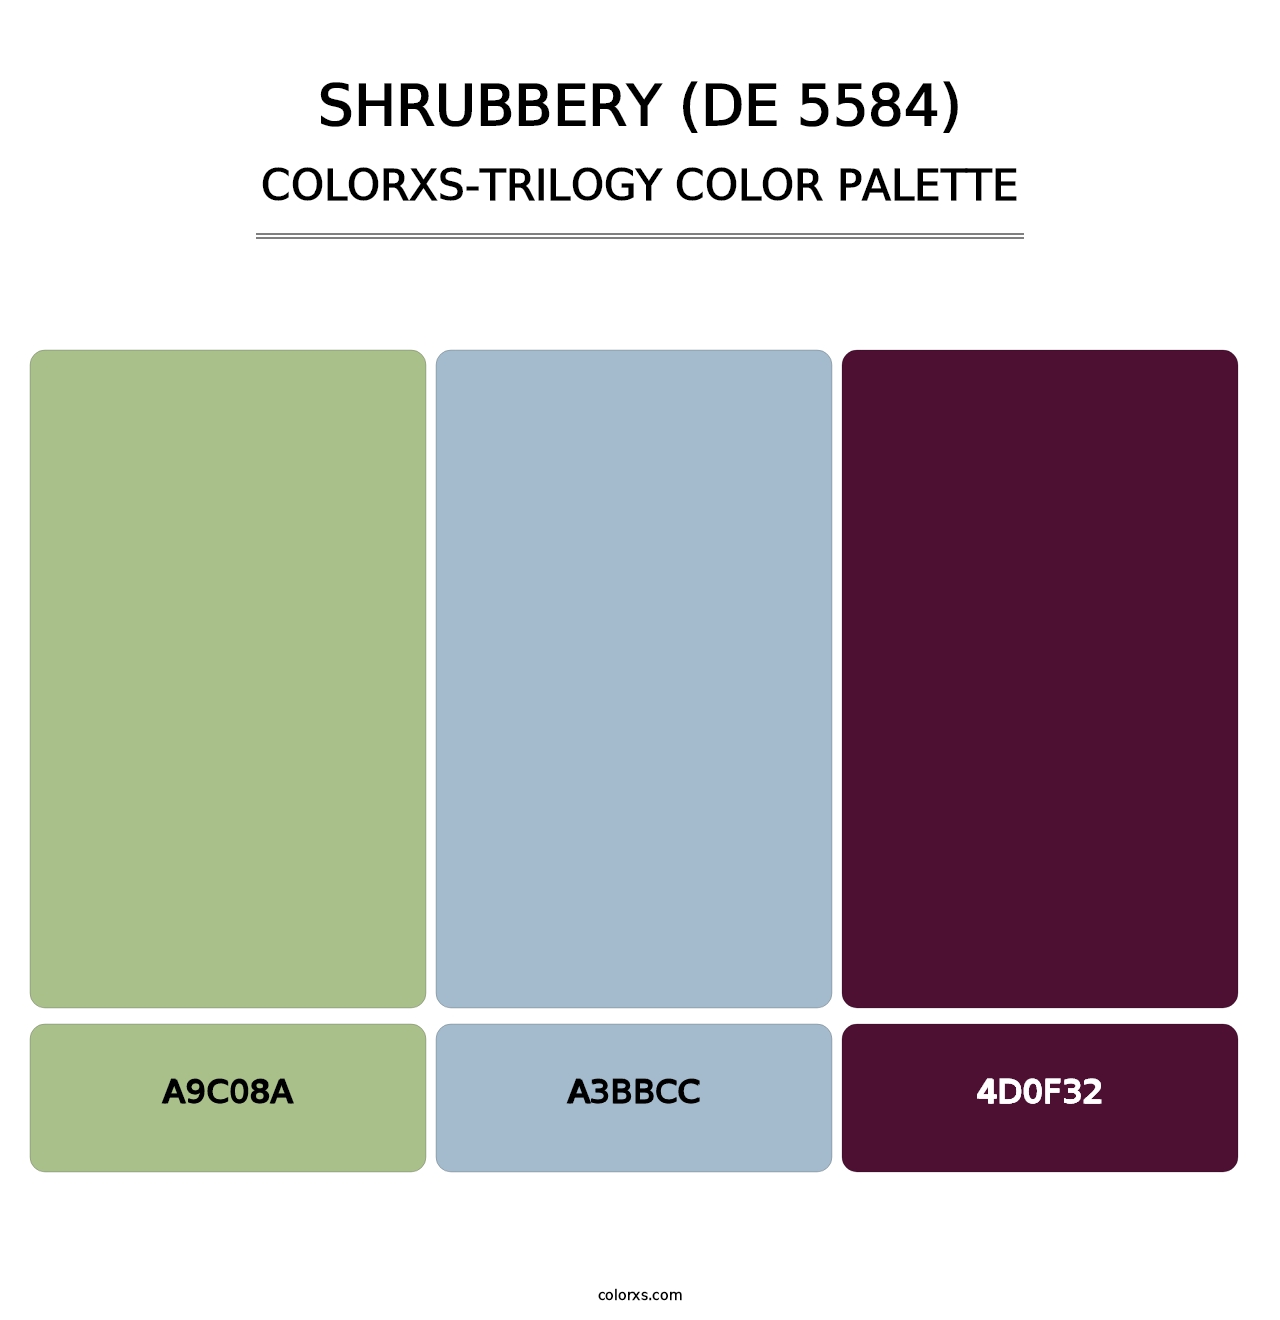 Shrubbery (DE 5584) - Colorxs Trilogy Palette